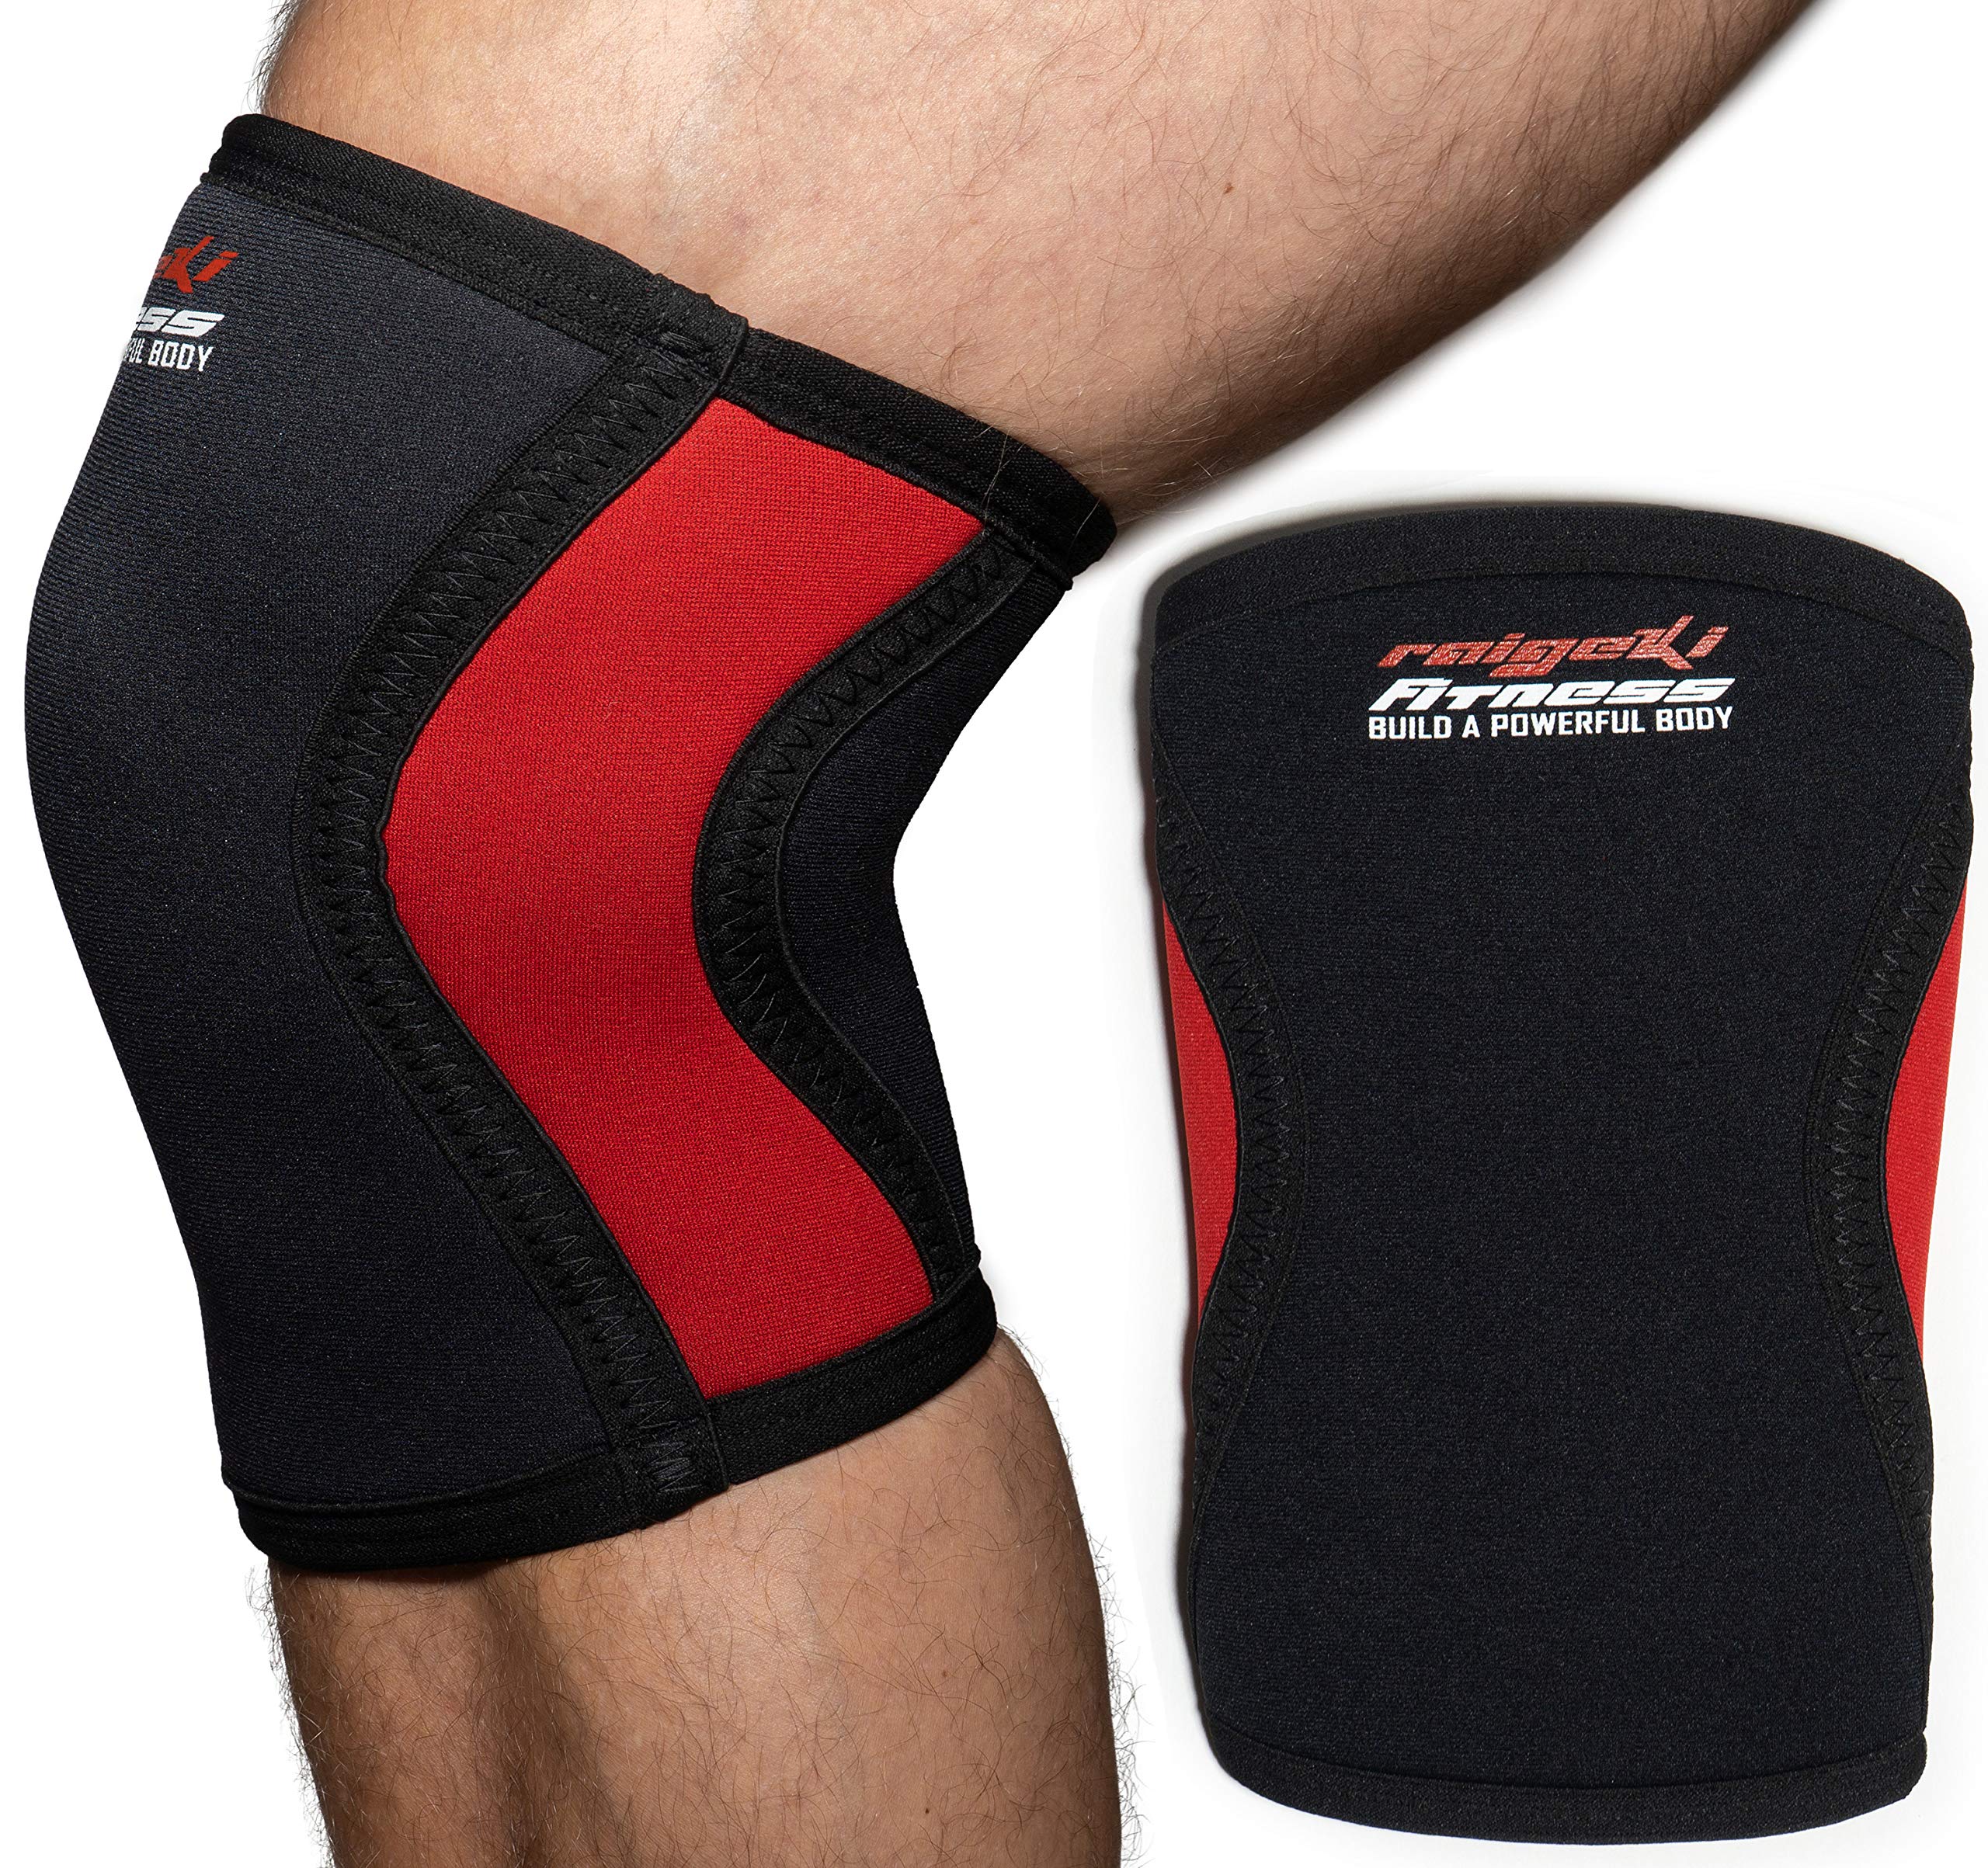 Raigeki Fitness Kniebandage 7mm Neopren [2er Set] Knee Sleeves (+ Trainingspläne) auch für Ellenbogen, Kniestütze, Kniewärmer für Krafttraining, Crossfit, Bodybuilding & Kampfsport (L)